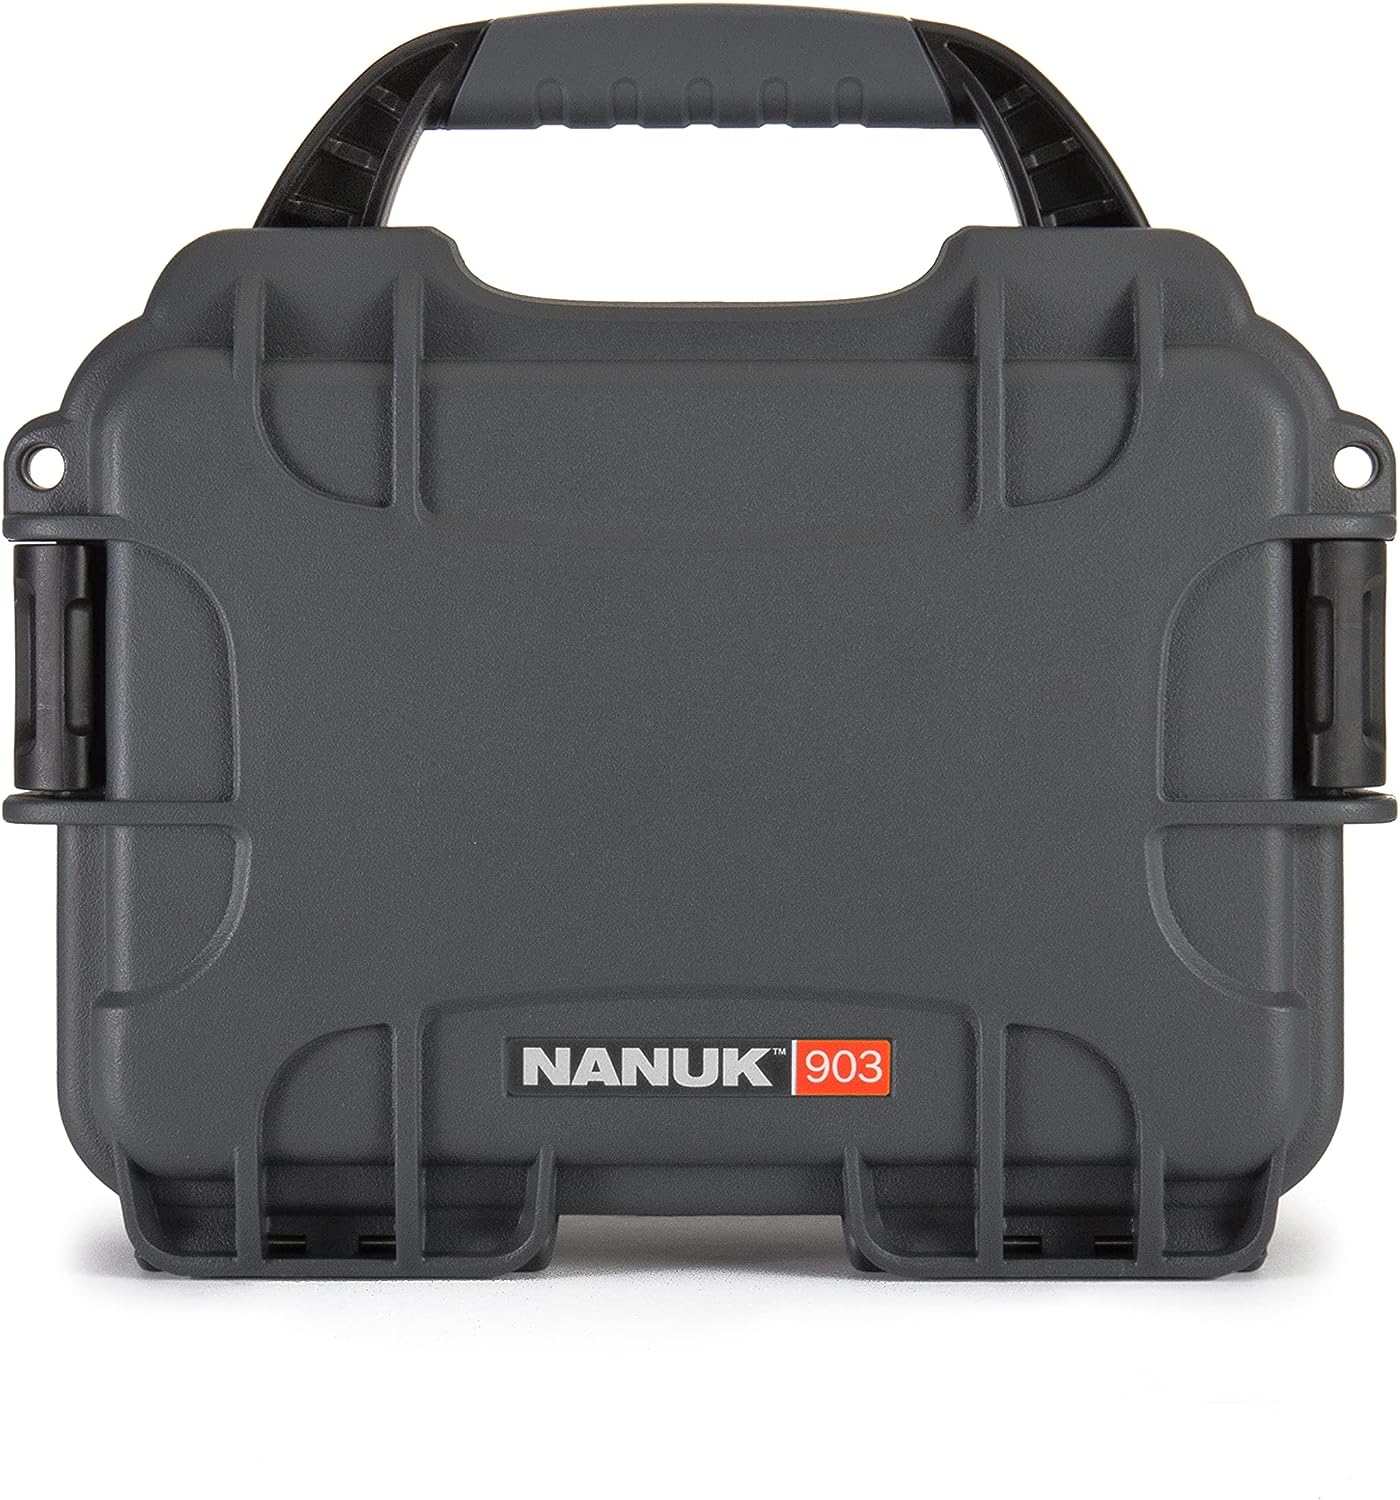 NANUK - PROTECTIVE CASE 903 W/FOAM - GRAPHITE